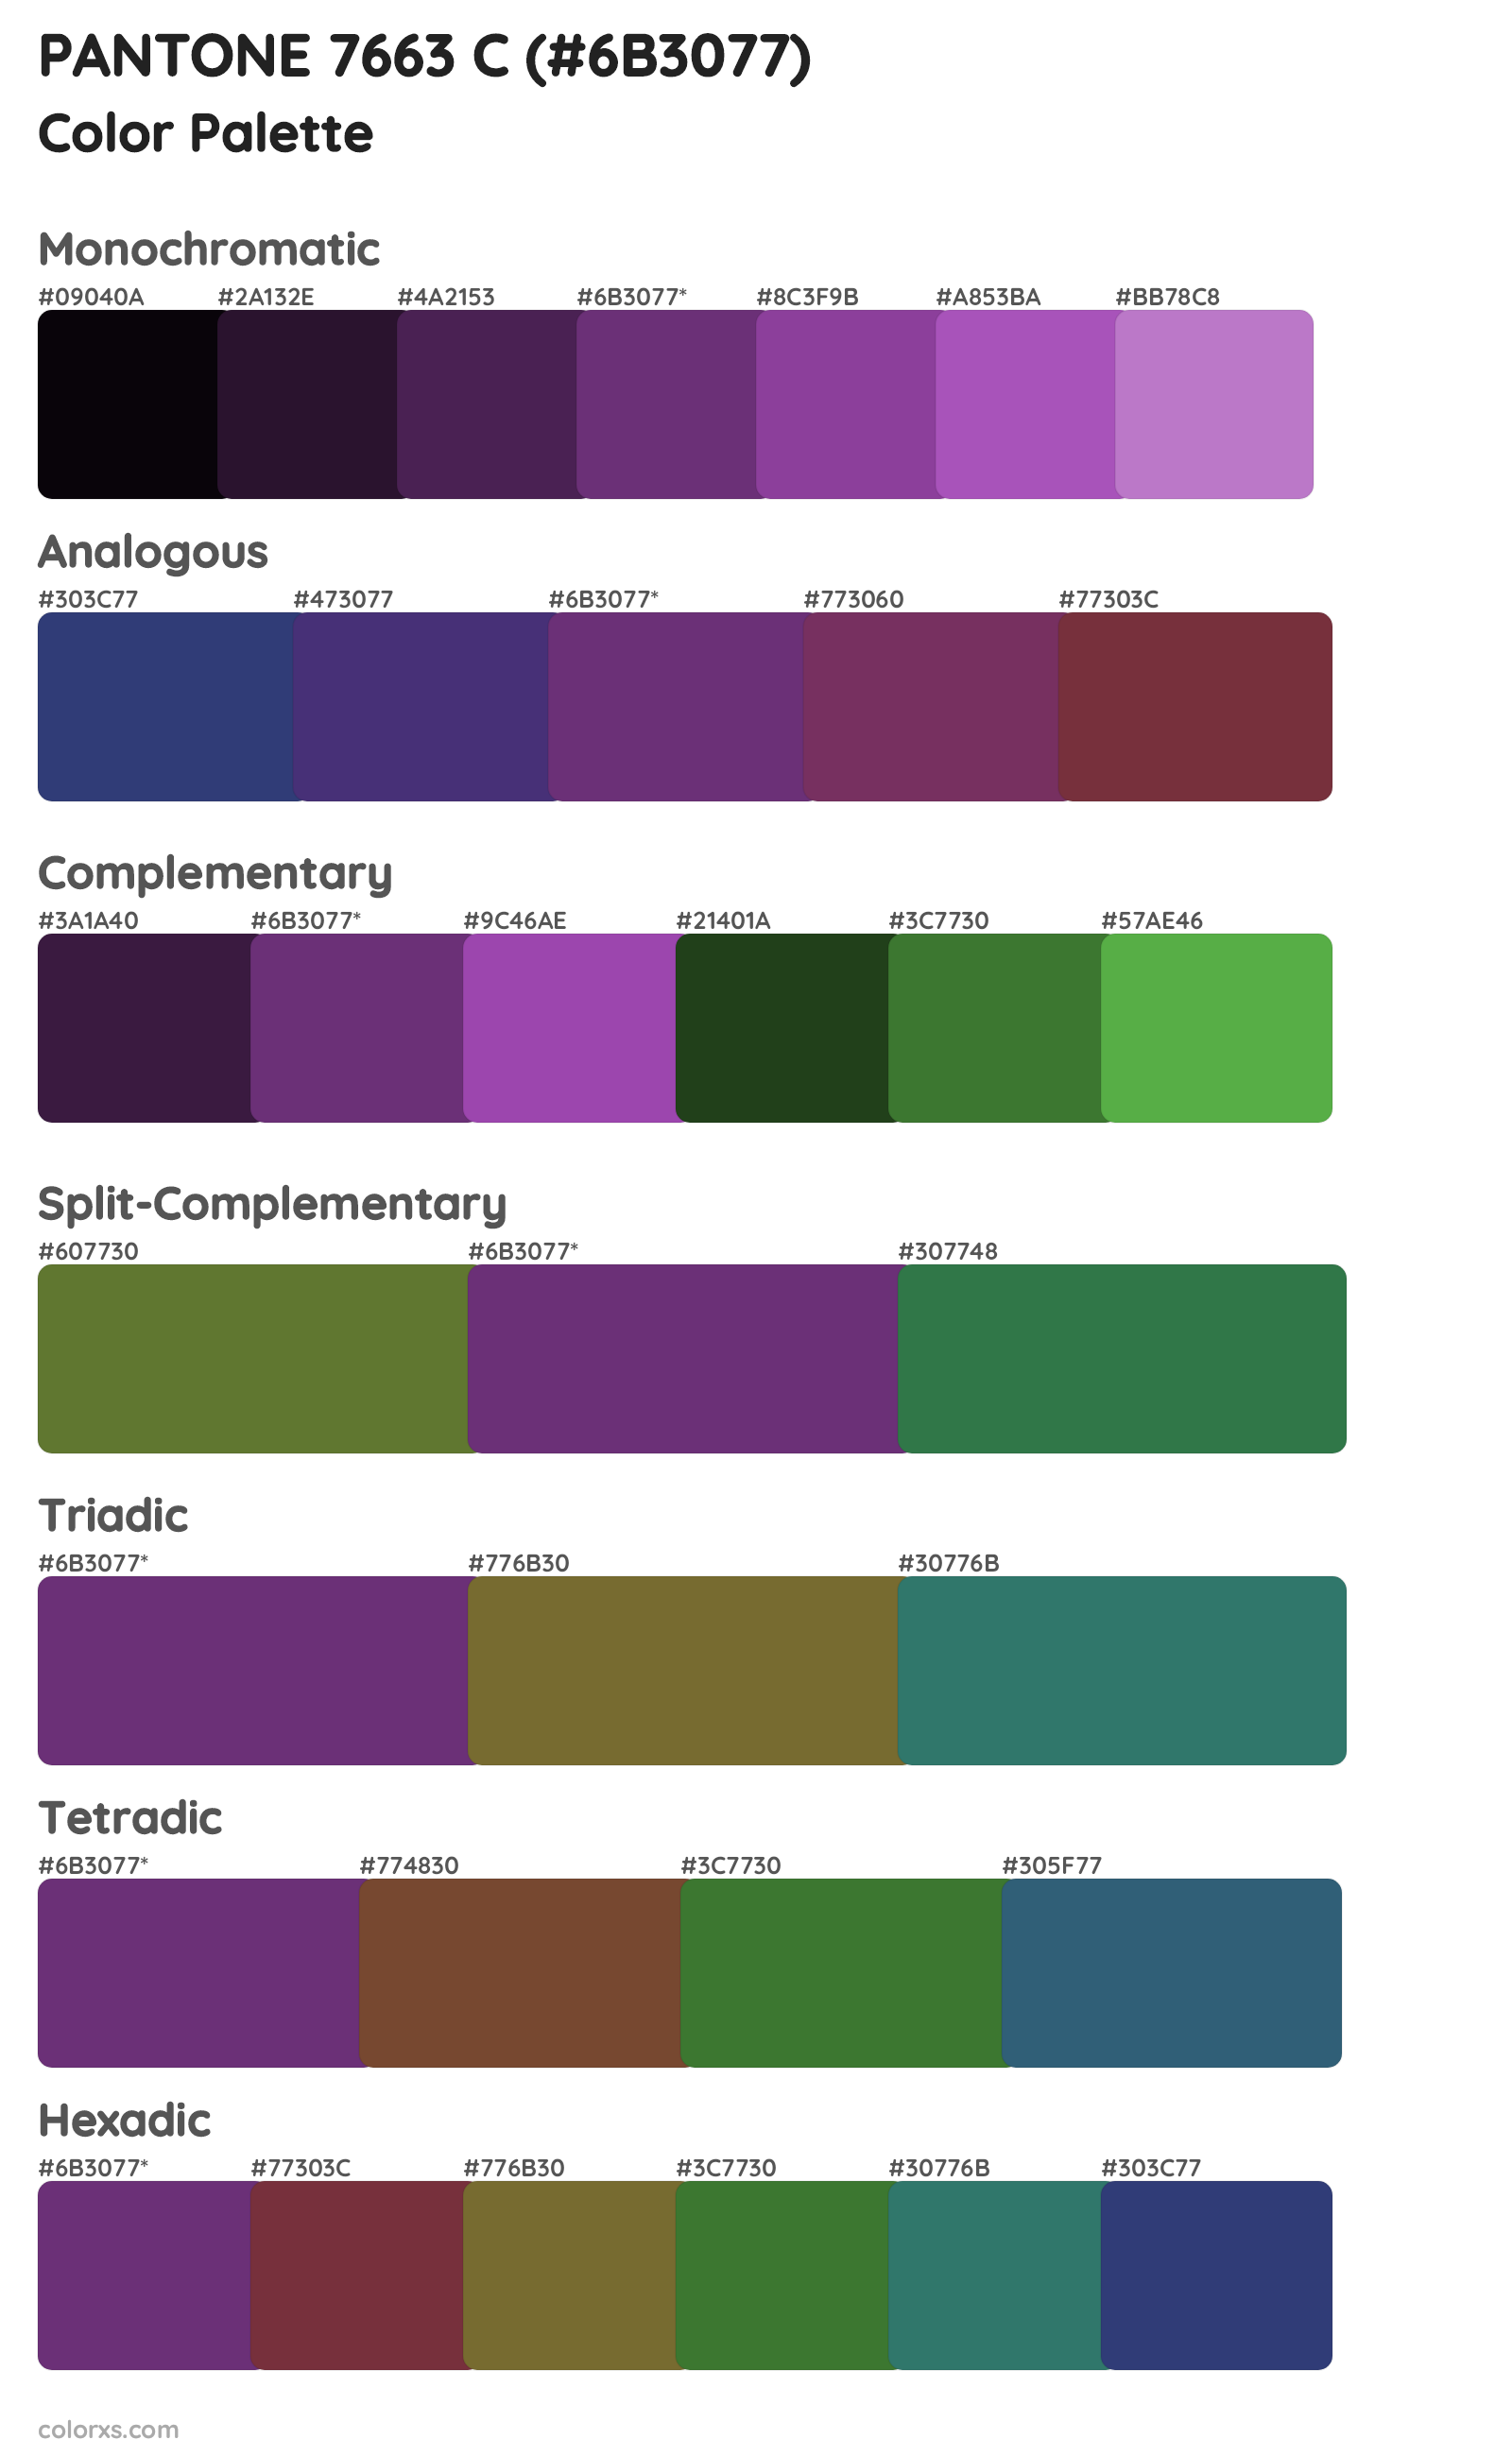 PANTONE 7663 C Color Scheme Palettes